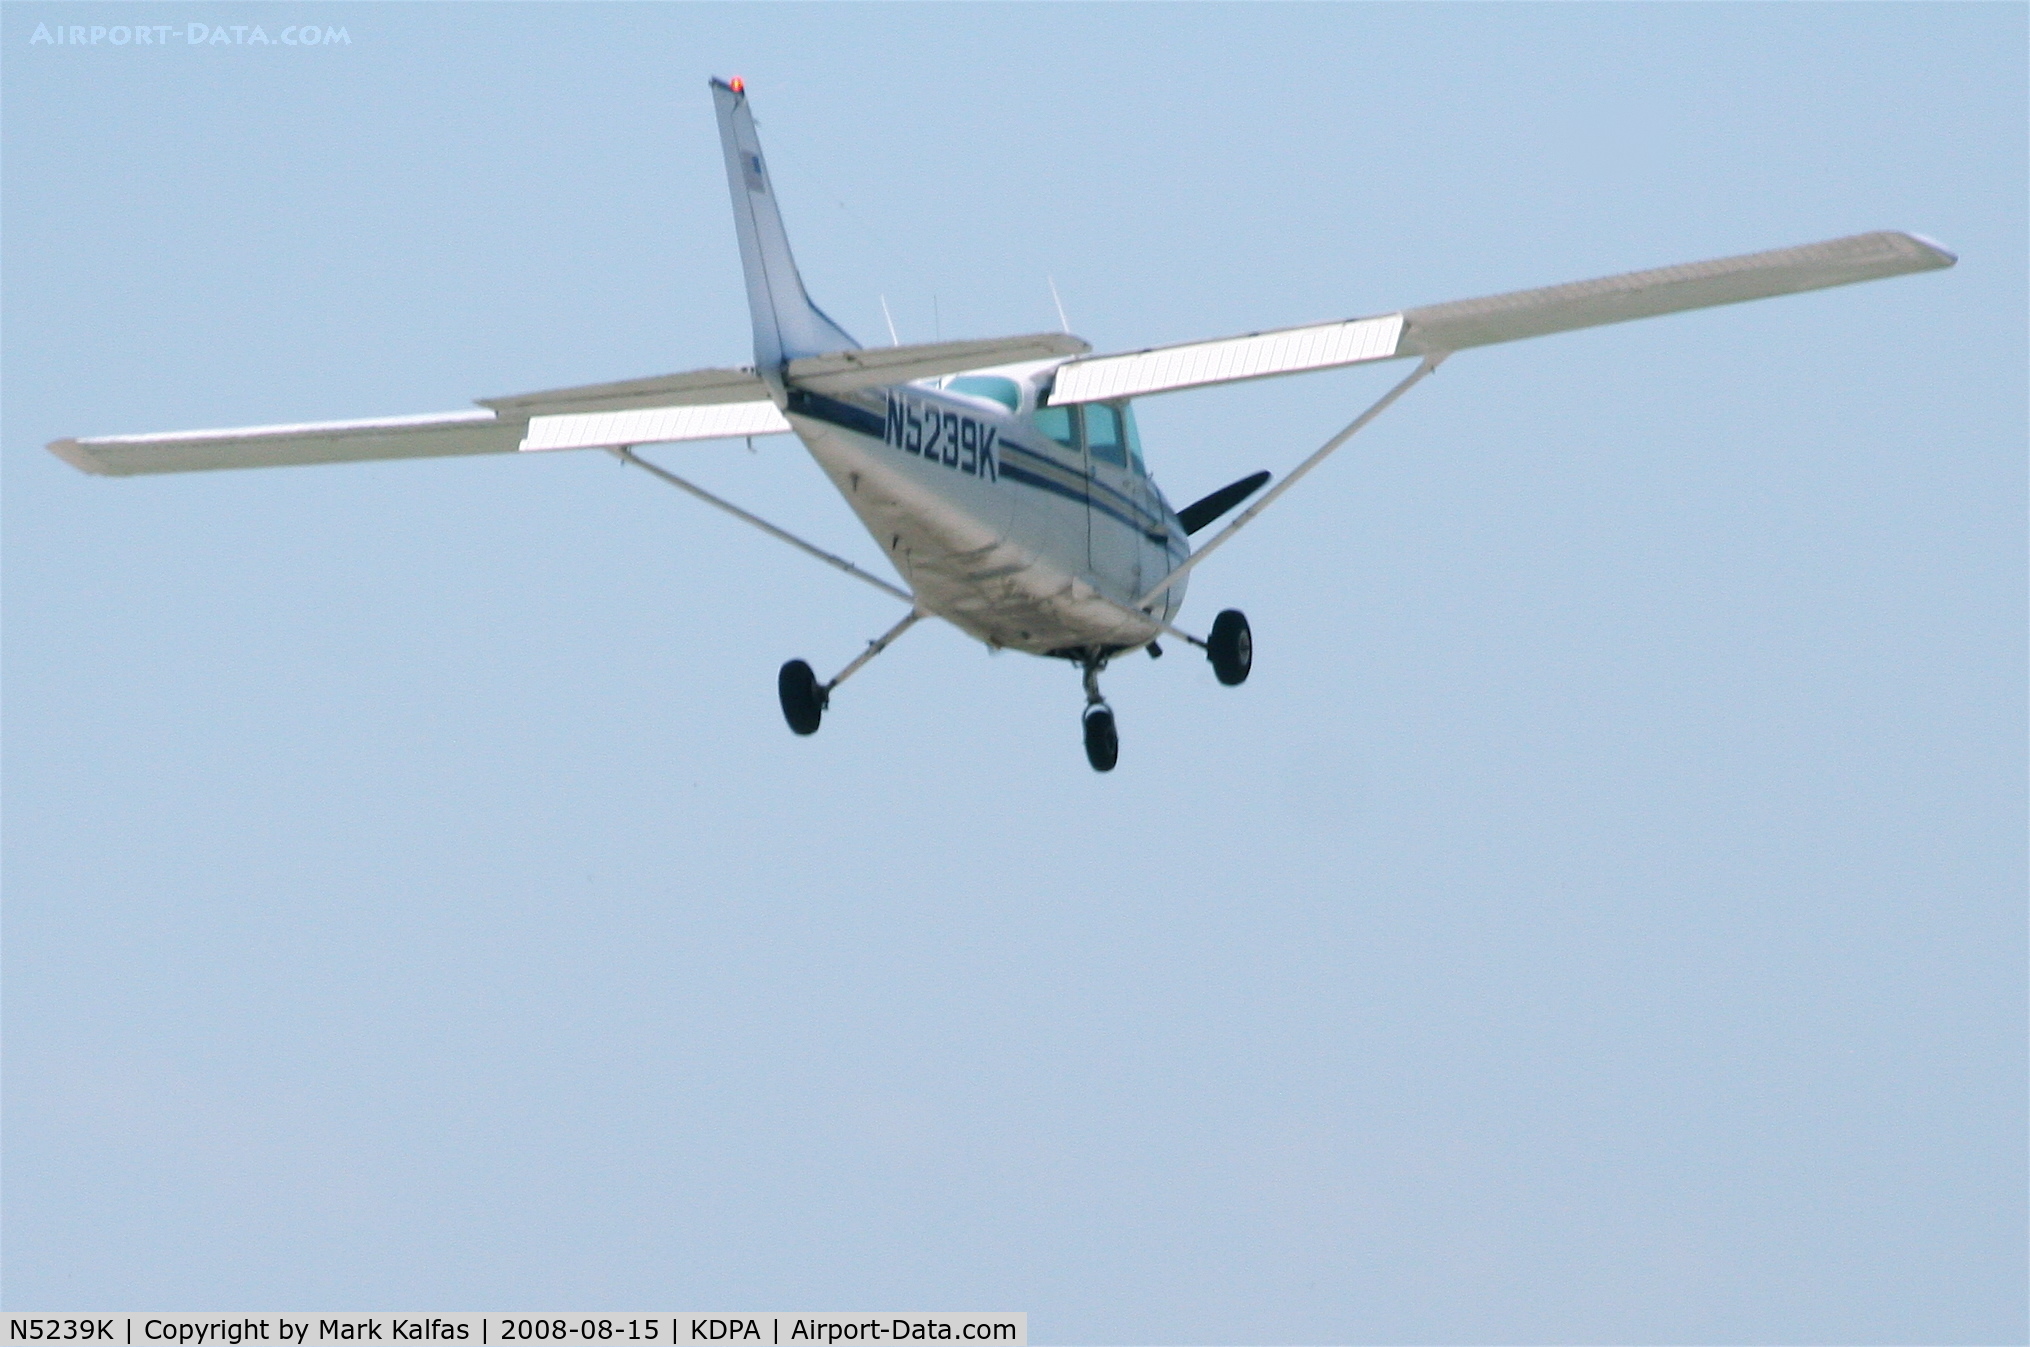 N5239K, 1980 Cessna 172P C/N 17274027, Cessna 172P, N5239K on approach RWY 28 KDPA.